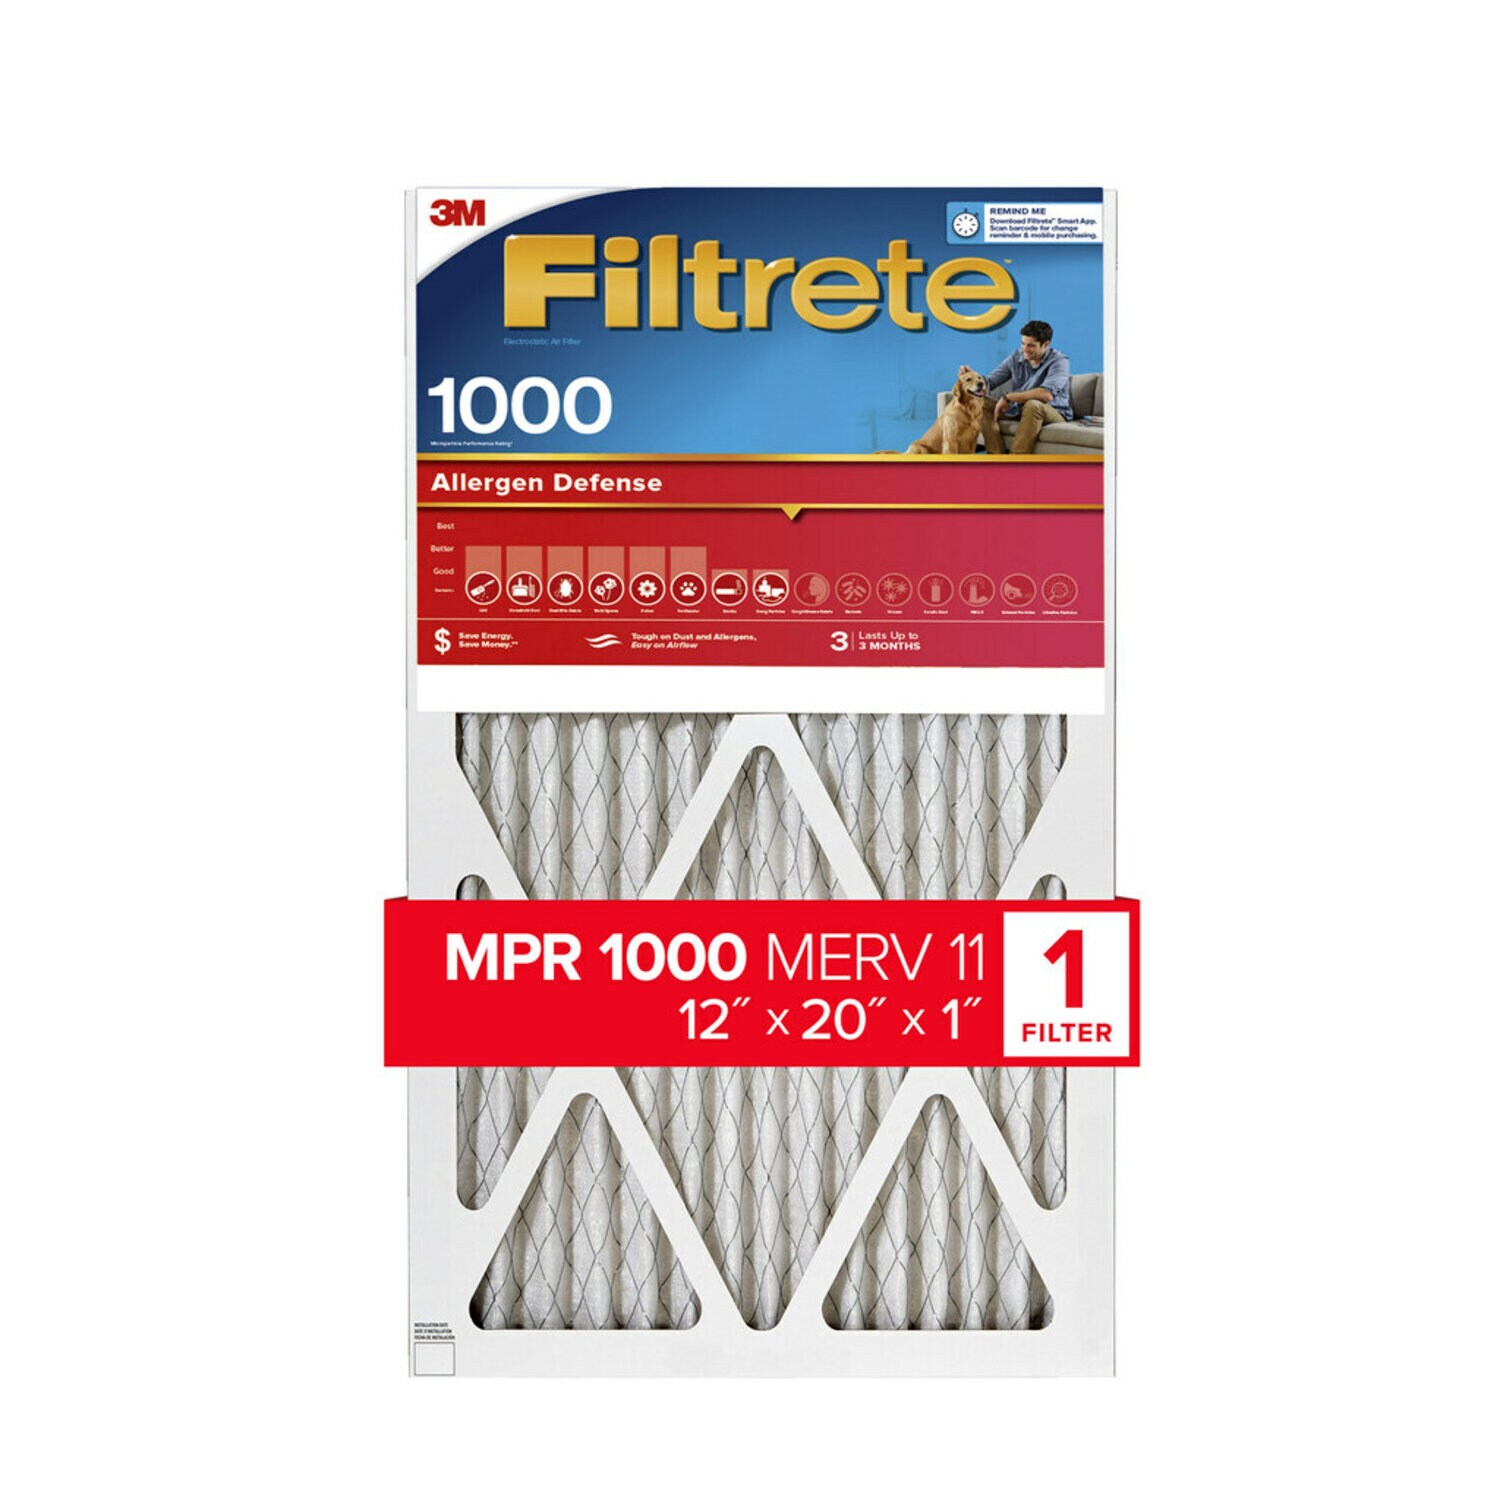 7100188877 - Filtrete Allergen Defense Air Filter, 1000 MPR, 9819-4, 12 in x 20 in x
1 in (30,4 cm x 50,8 cm x 2,5 cm)